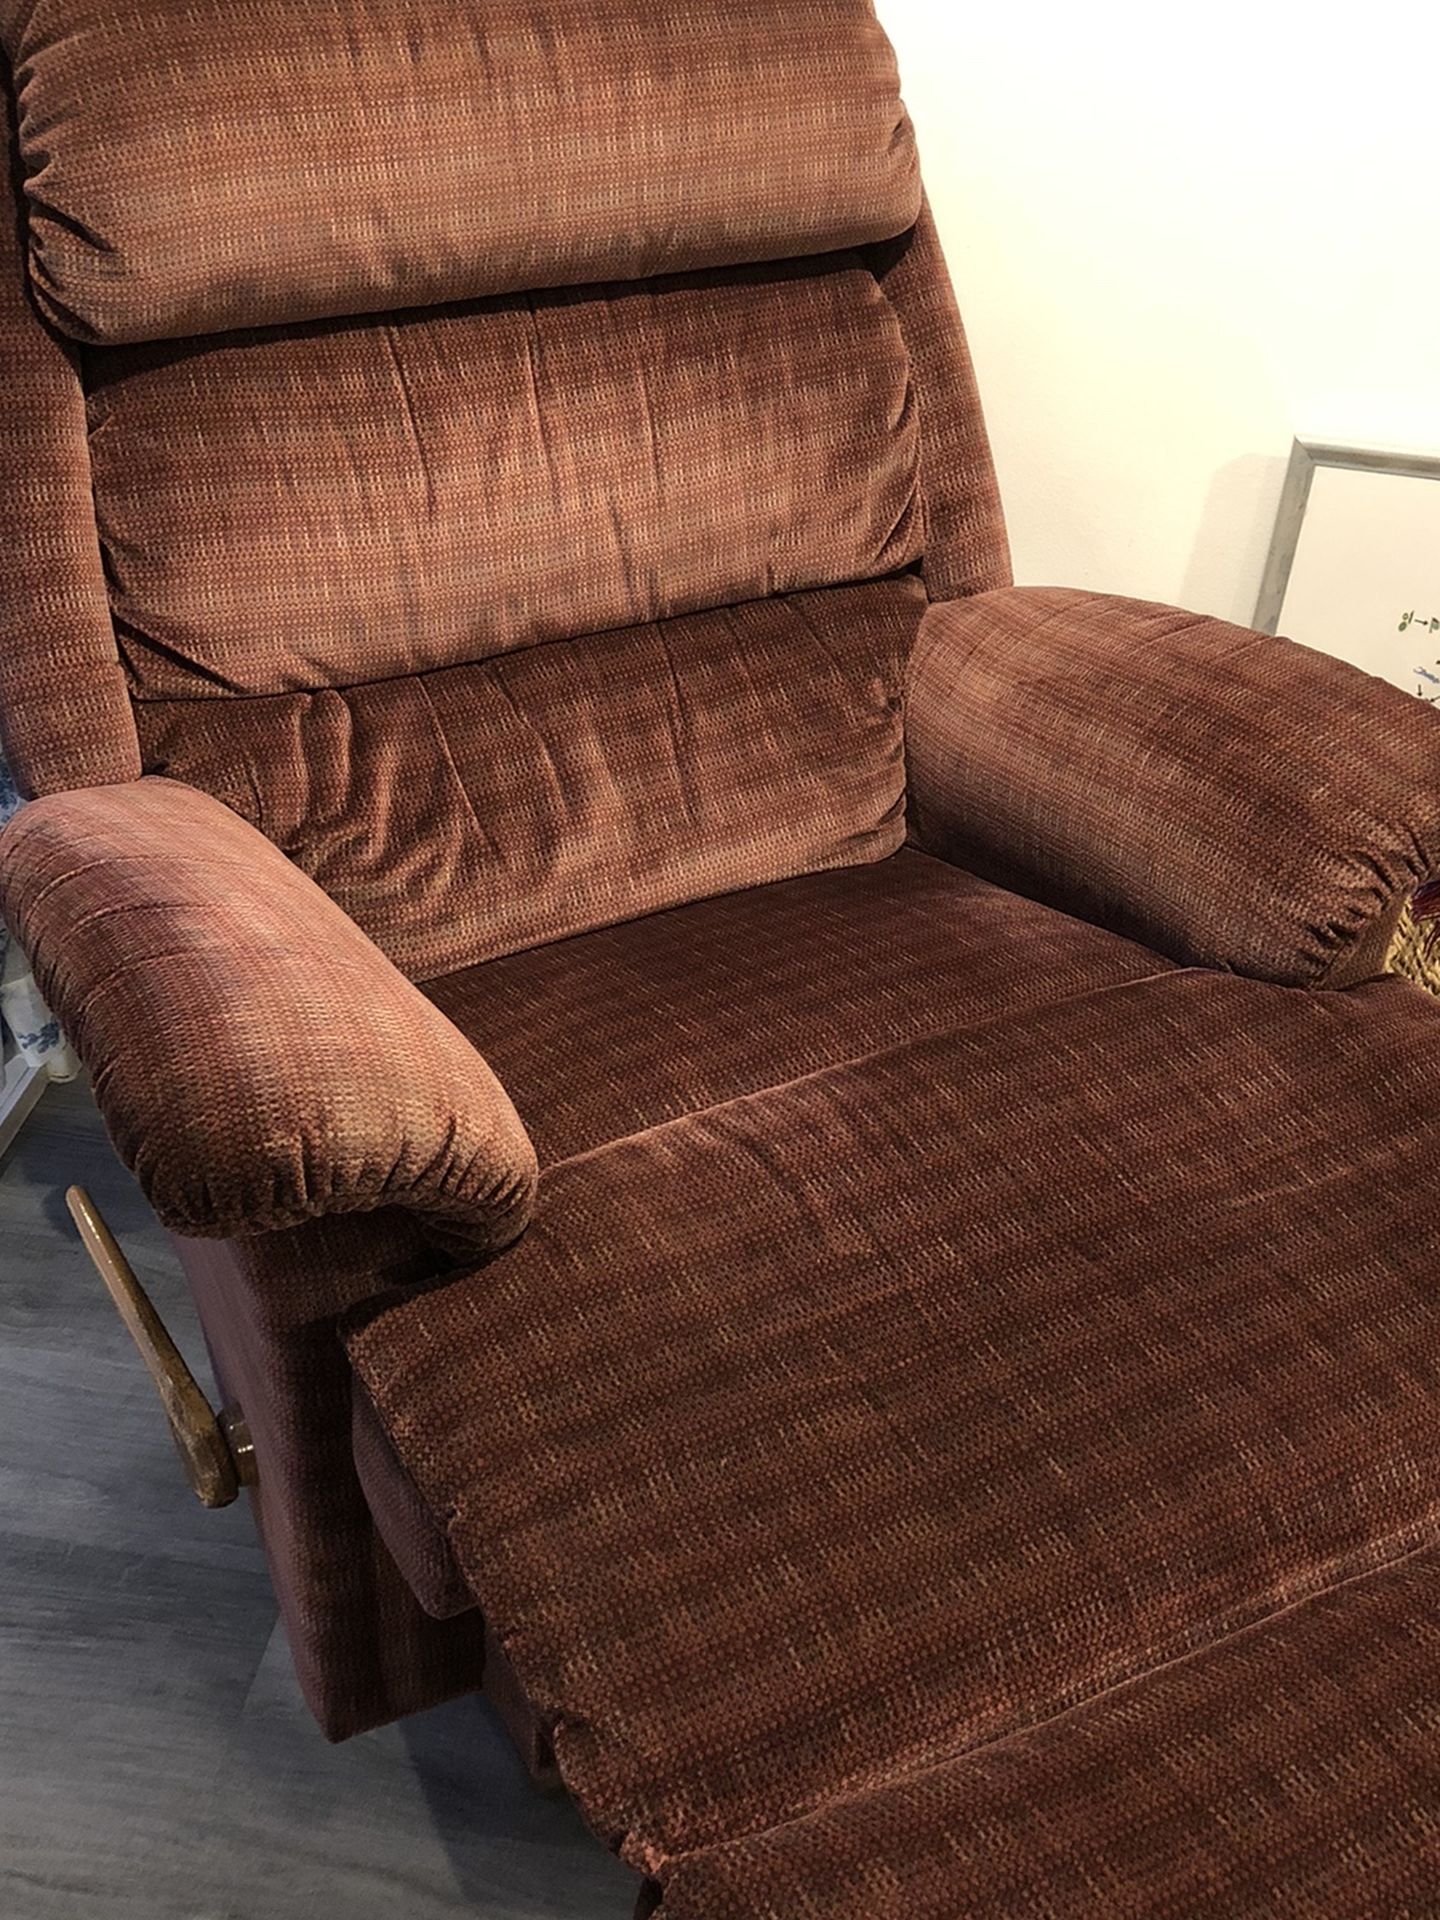 Rocker Recliner Armchair Lax-e-Boy Type Couch